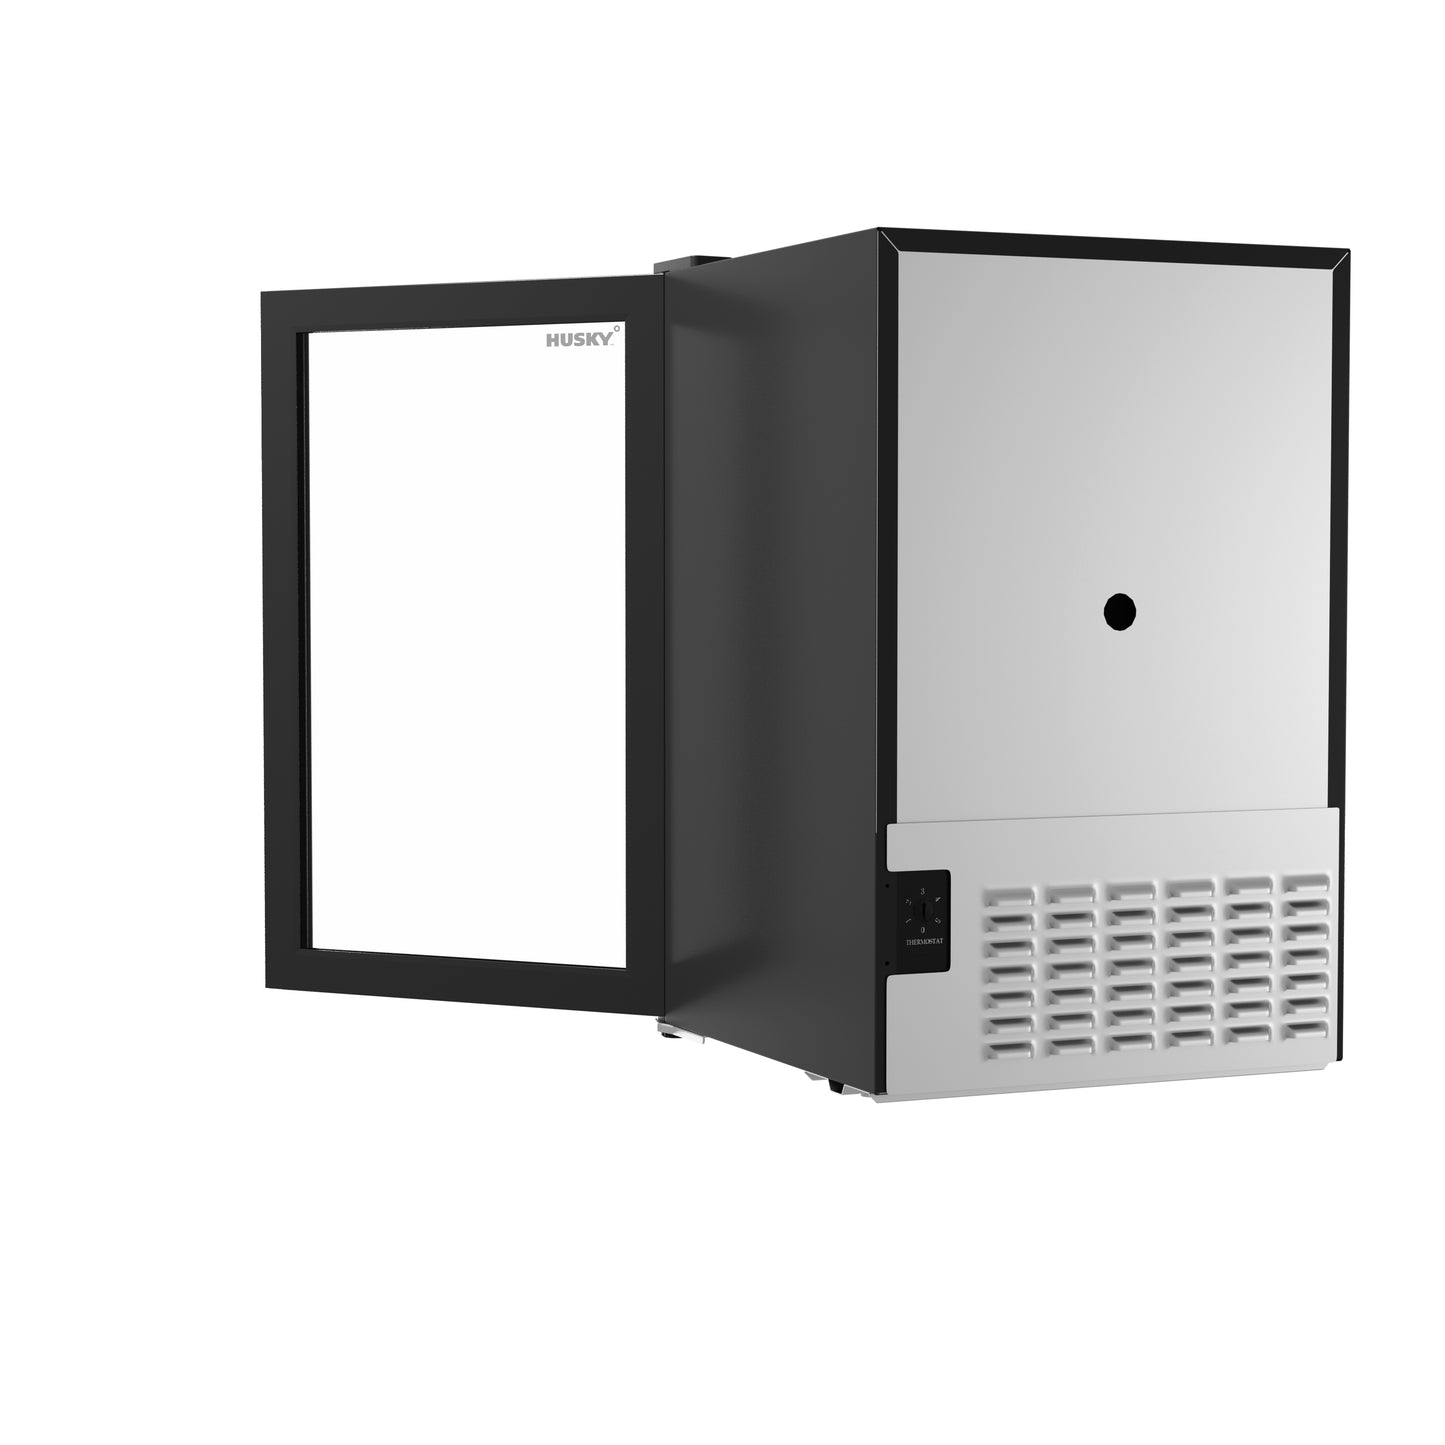 Husky 69L Beverage Refrigerator 2.4 C.ft. Freestanding Mini Fridge With Glass Door in Black